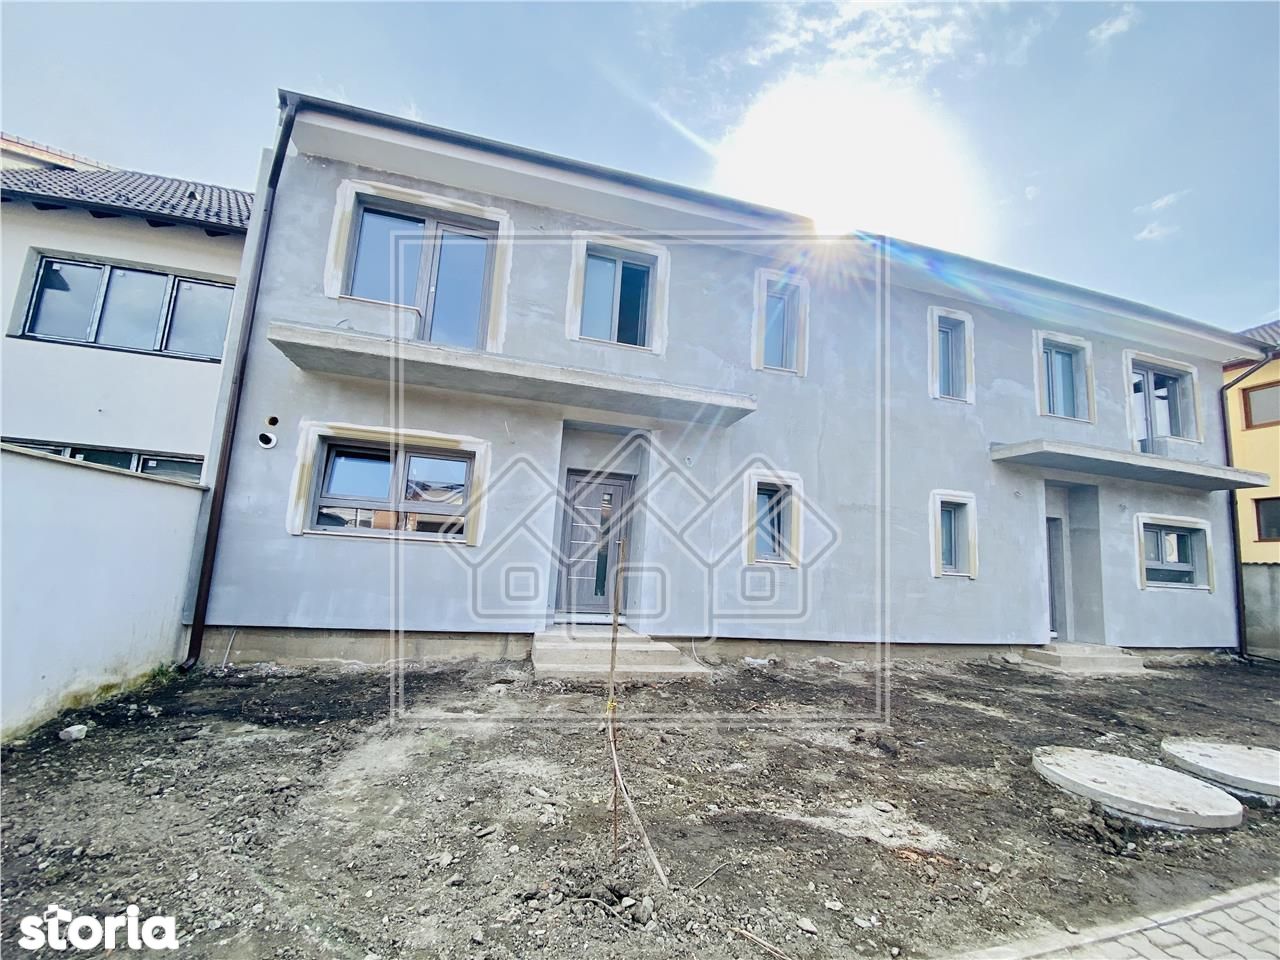 Casa in Selimbar, 146 mp utili si 140 de curte libera, predare la alb